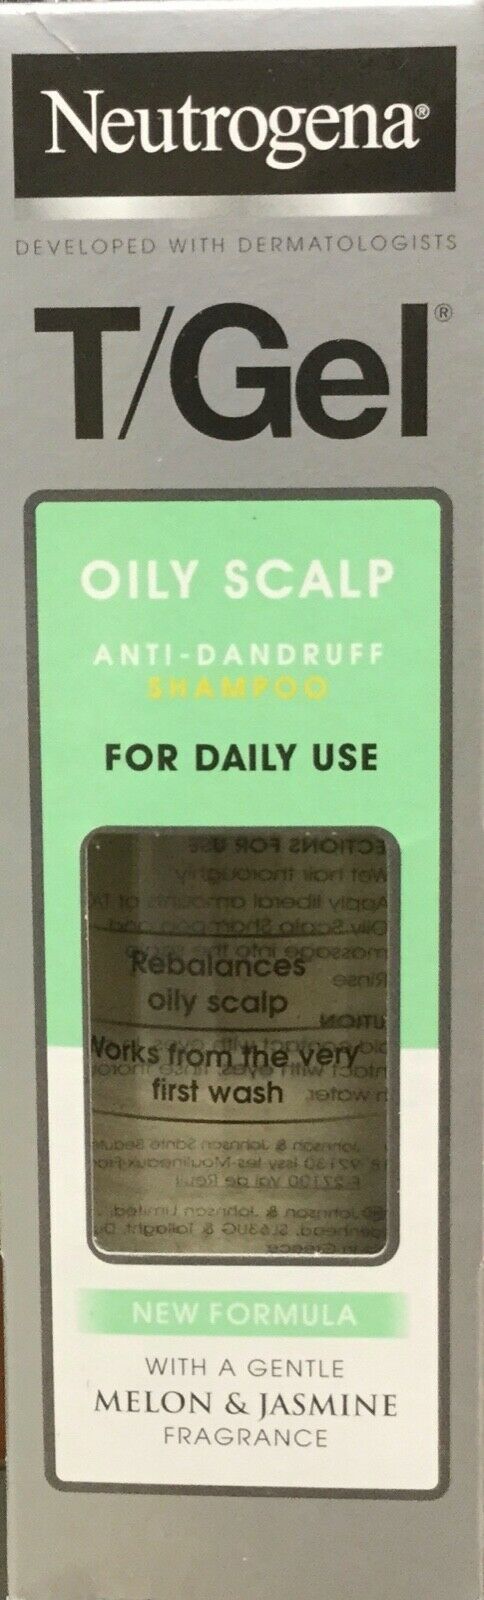 Neutrogena T/Gel for Oily Scalp Shampoo